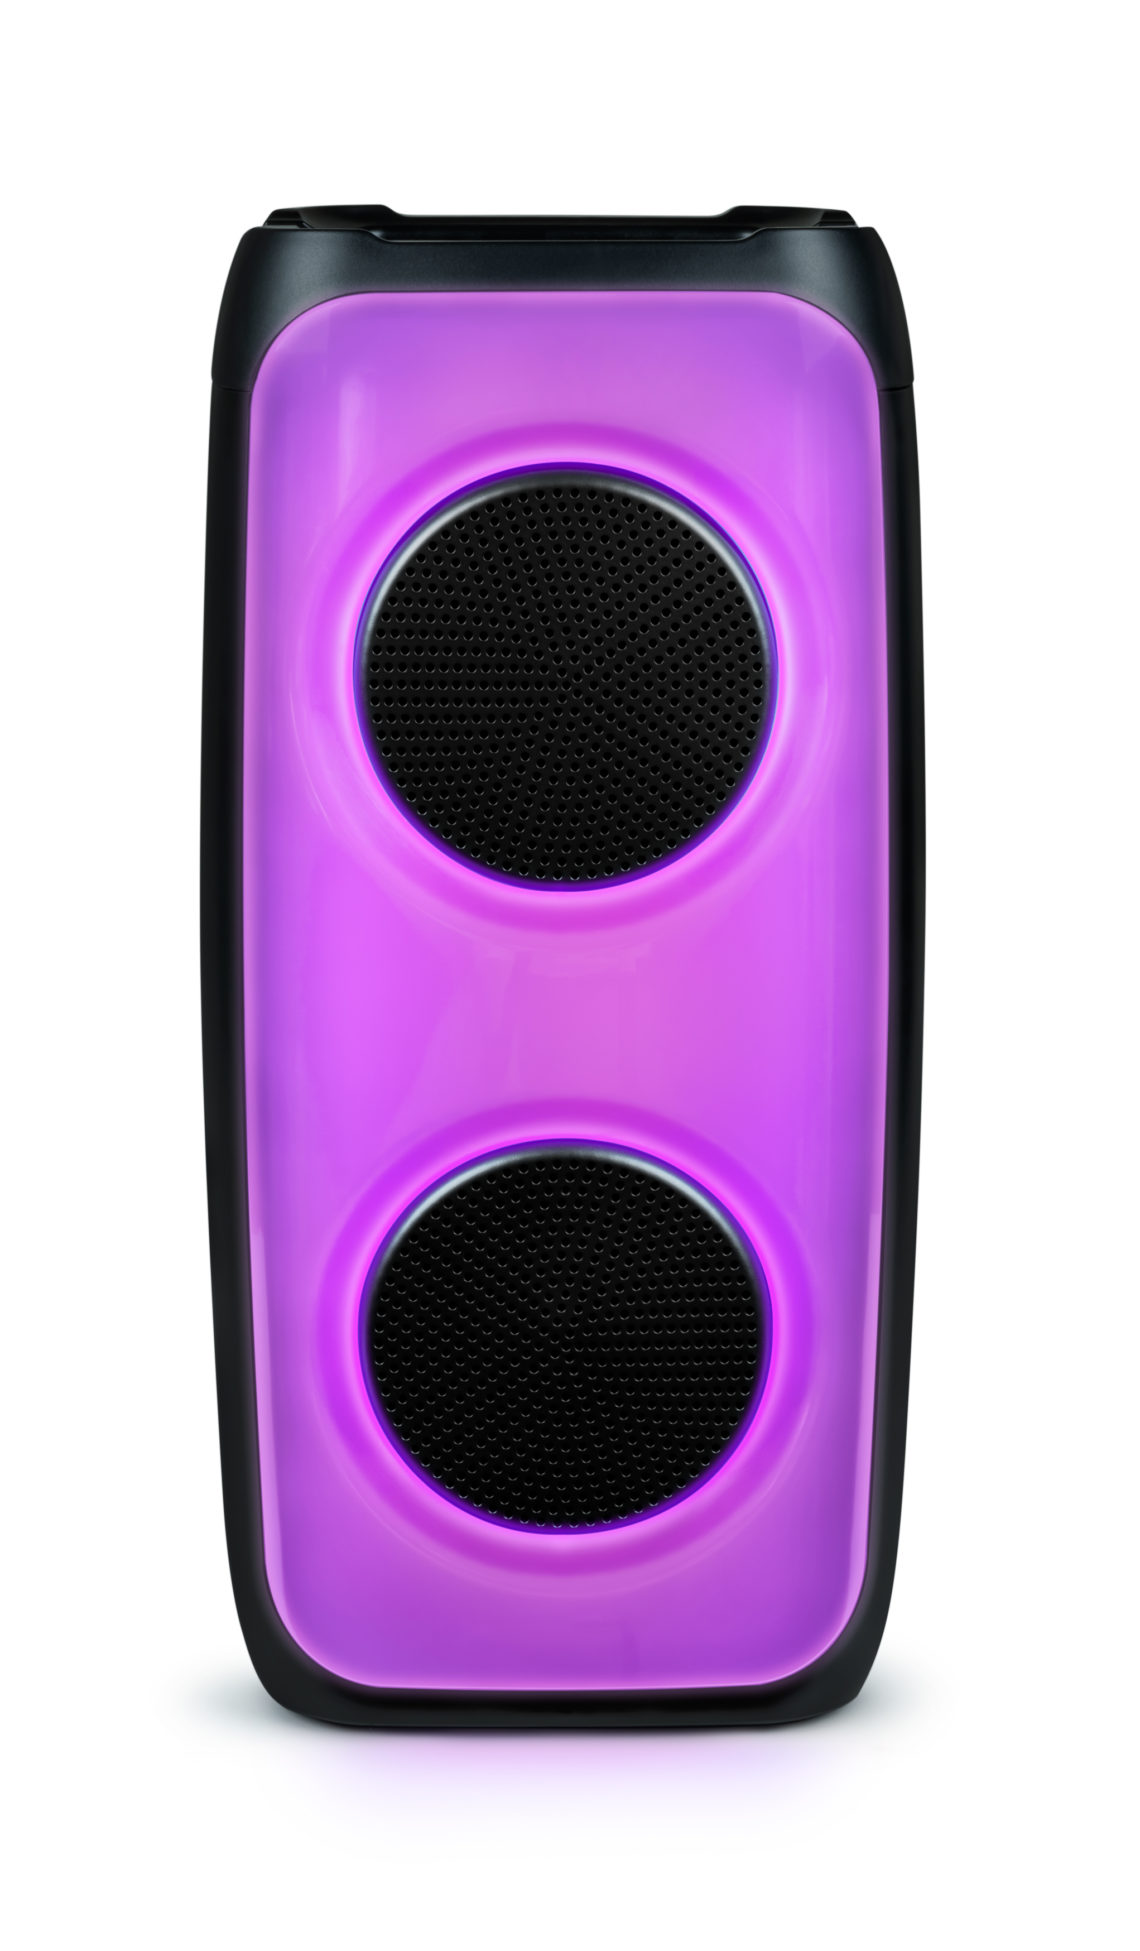 Bluetooth-Lautsprecher mit Lichteffekten – PARTYBTHPM | Bigben Interactive  Deutschland | Bigben | Audio | Bigben Party | Thomson | Nacon | RIG